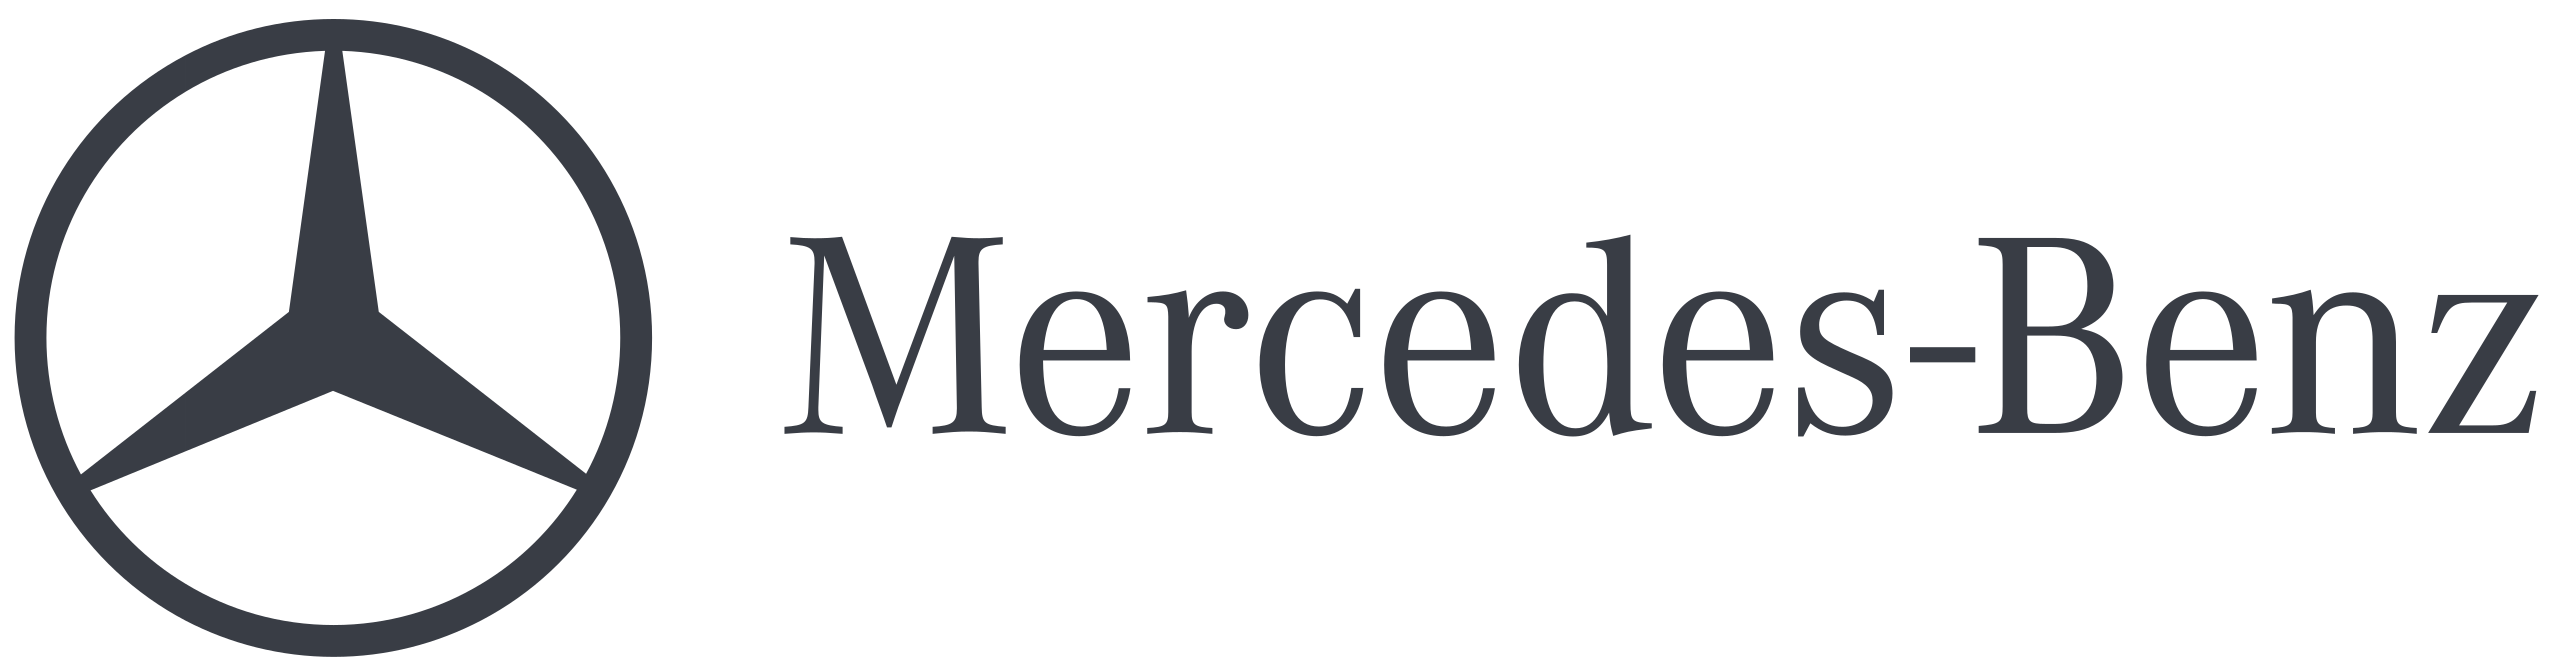 Mercedes-Benz_logo.svg copy